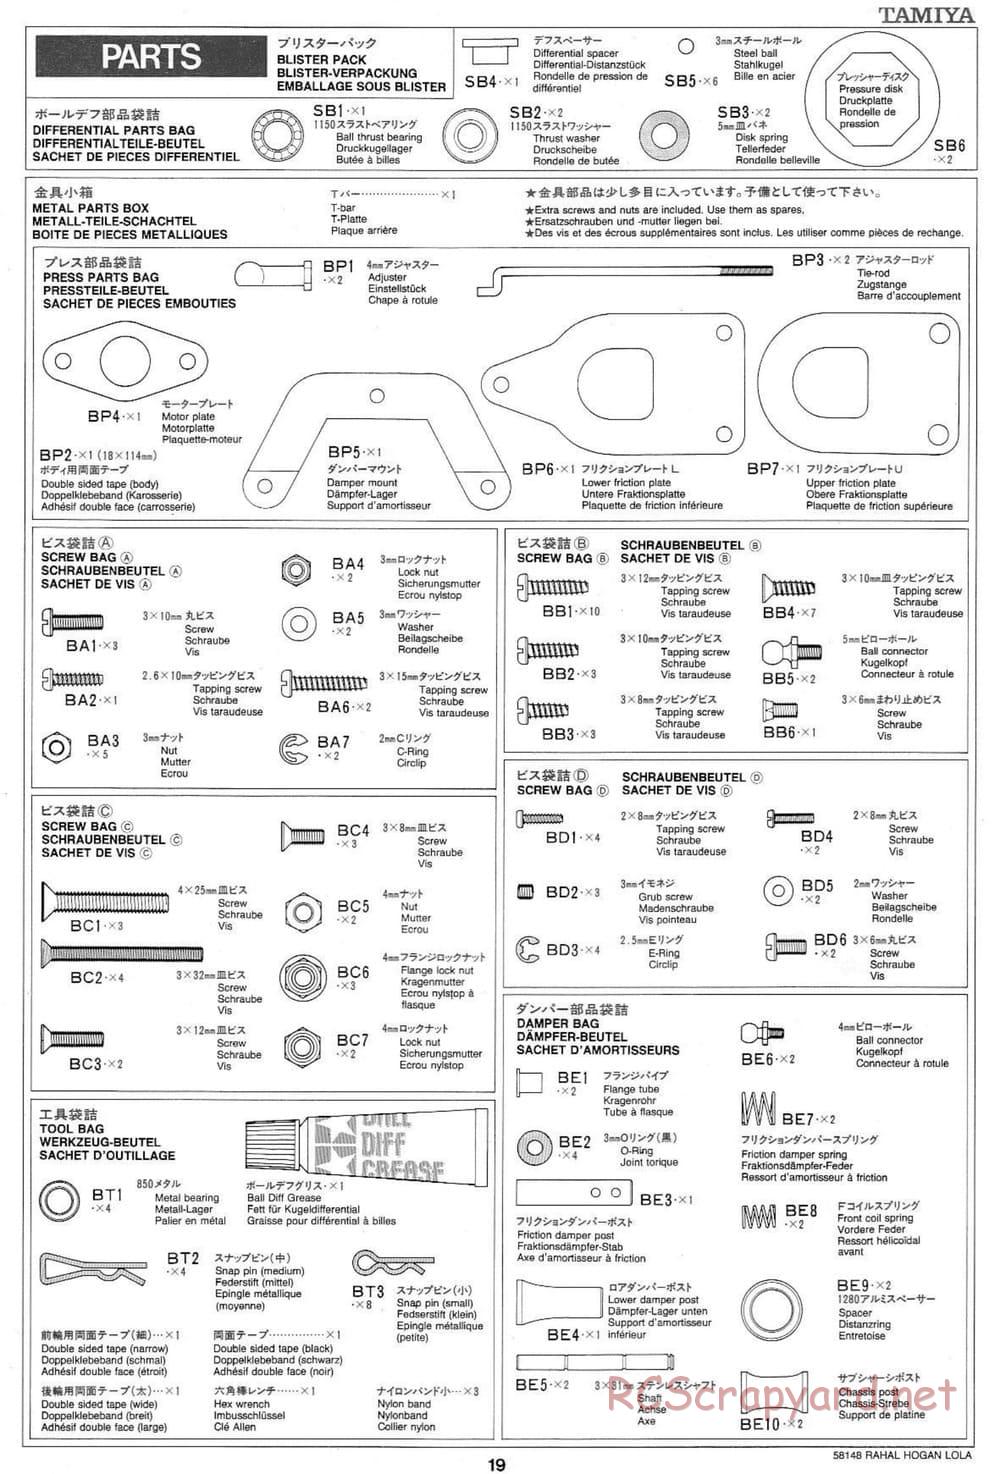 Tamiya - Rahal-Hogan Motorola Lola T94/00 Honda - F103L Chassis - Manual - Page 19